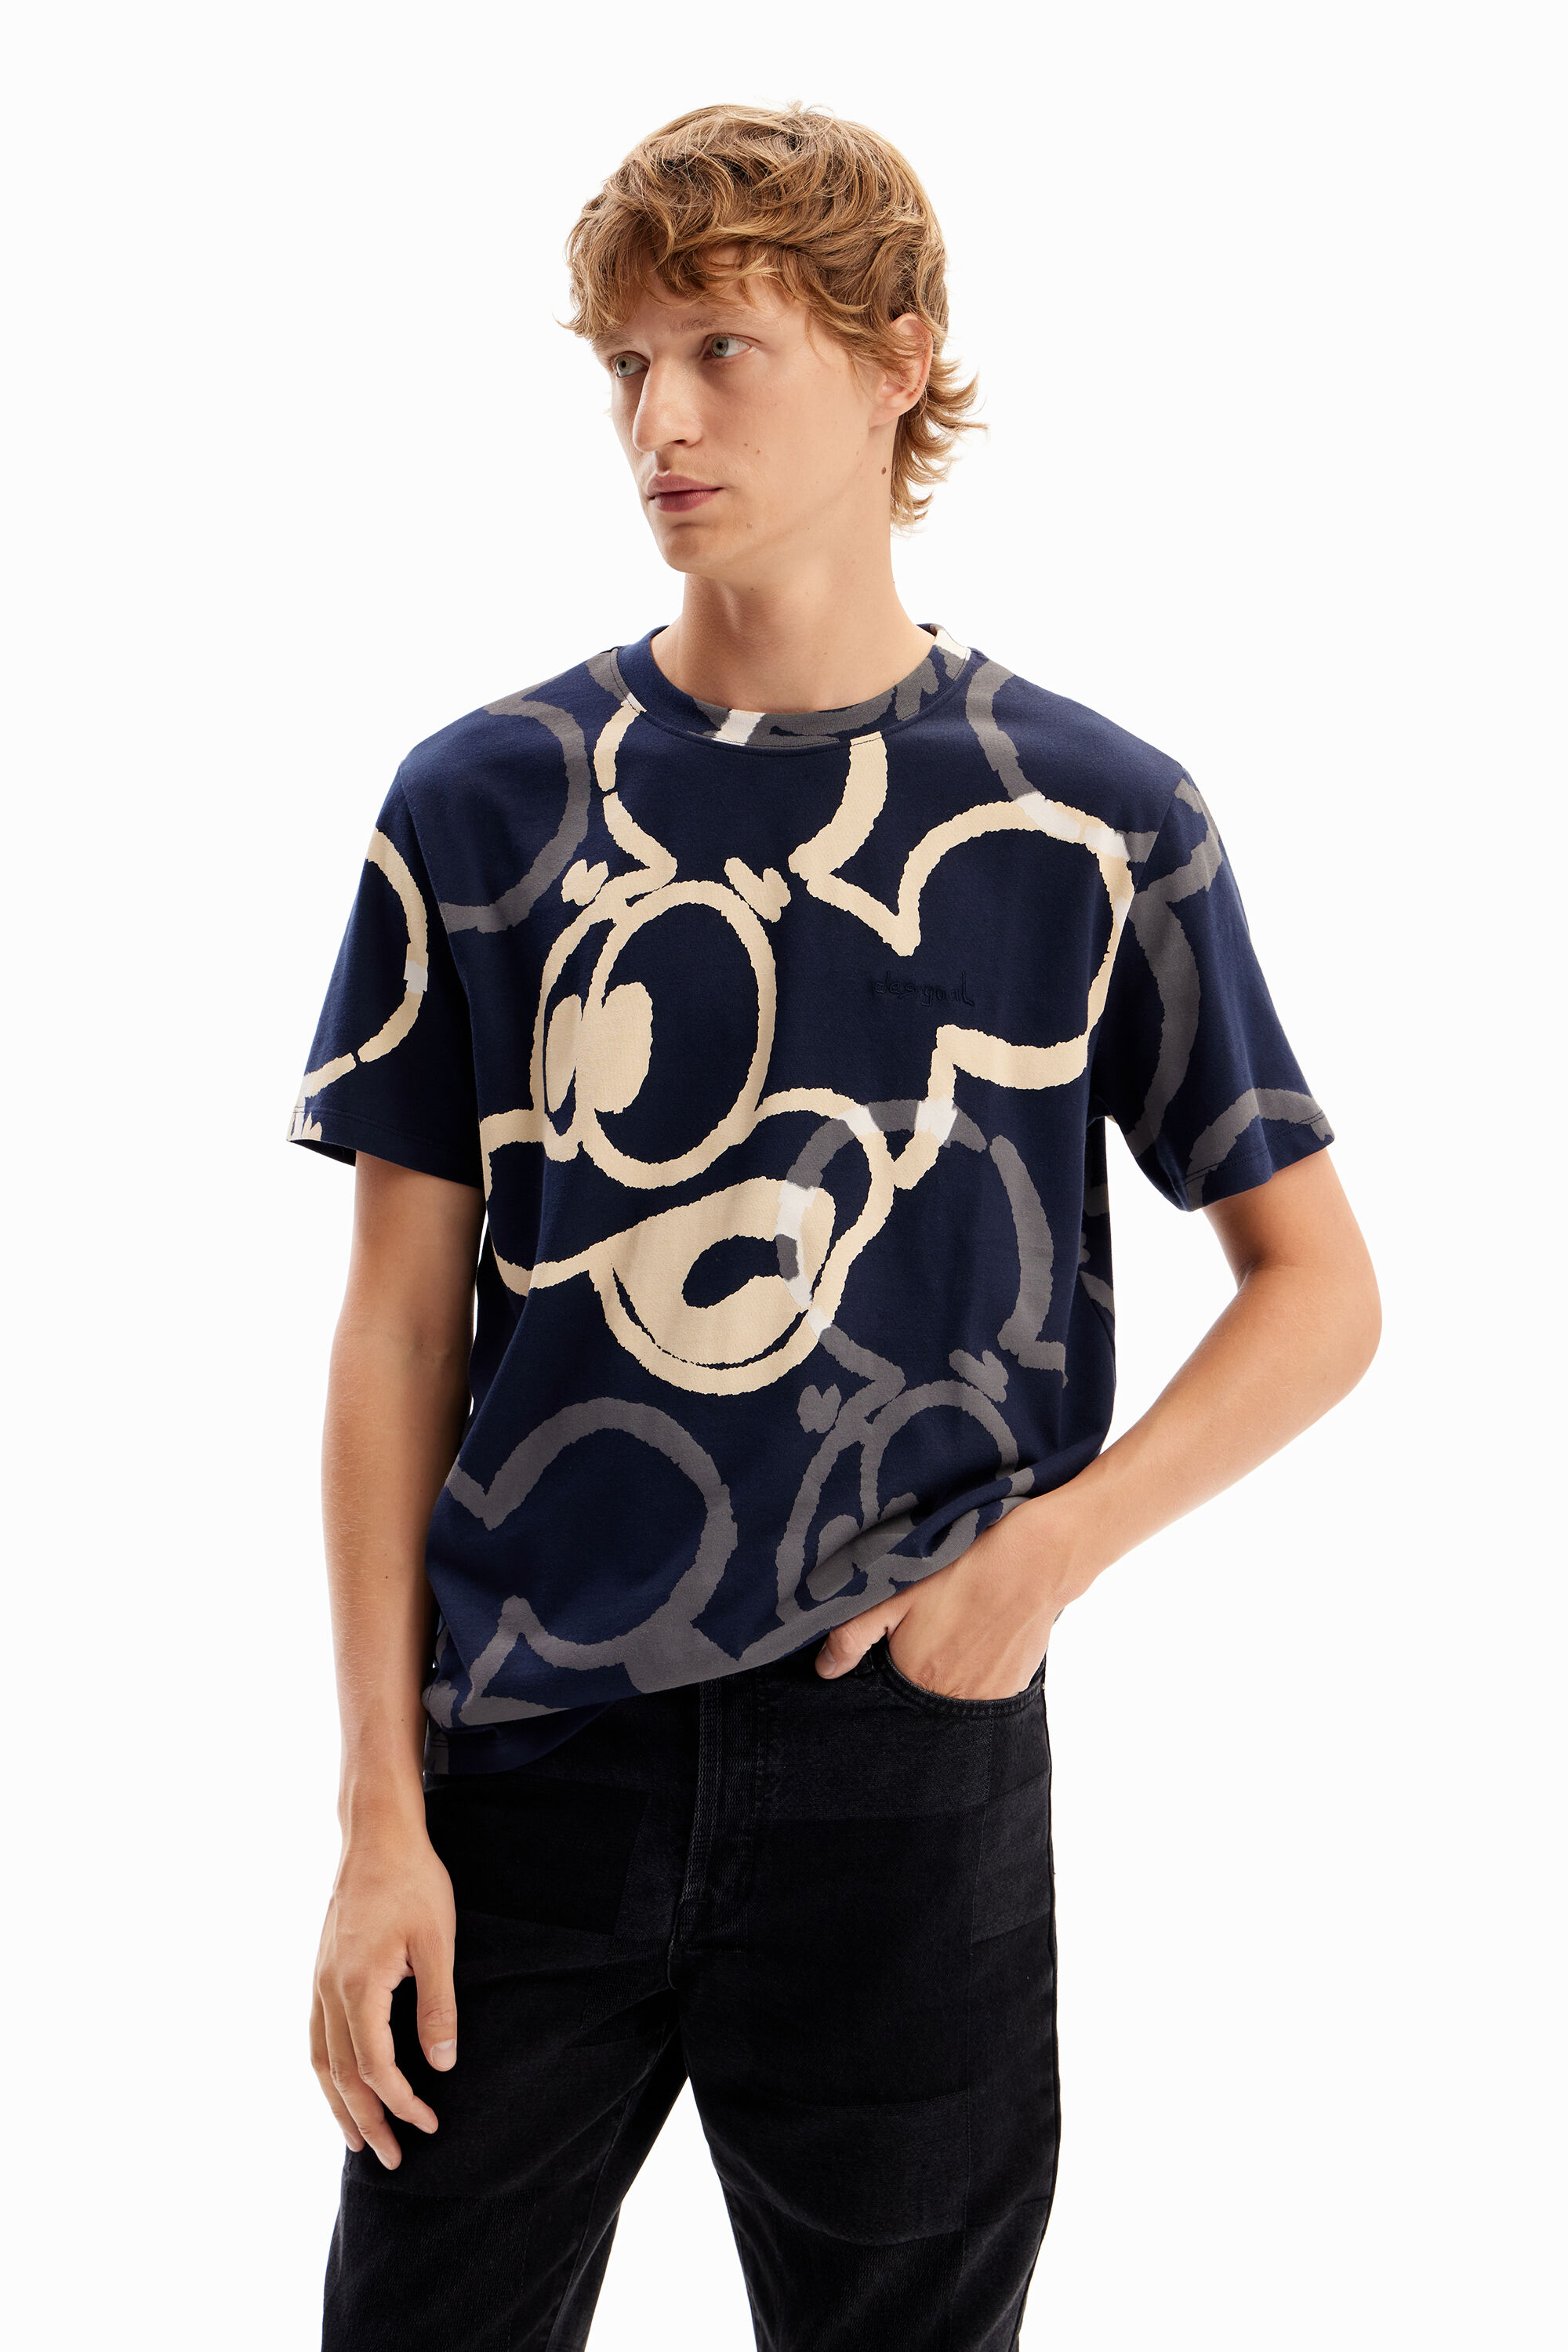 Desigual Maglietta Arty Mickey Mouse